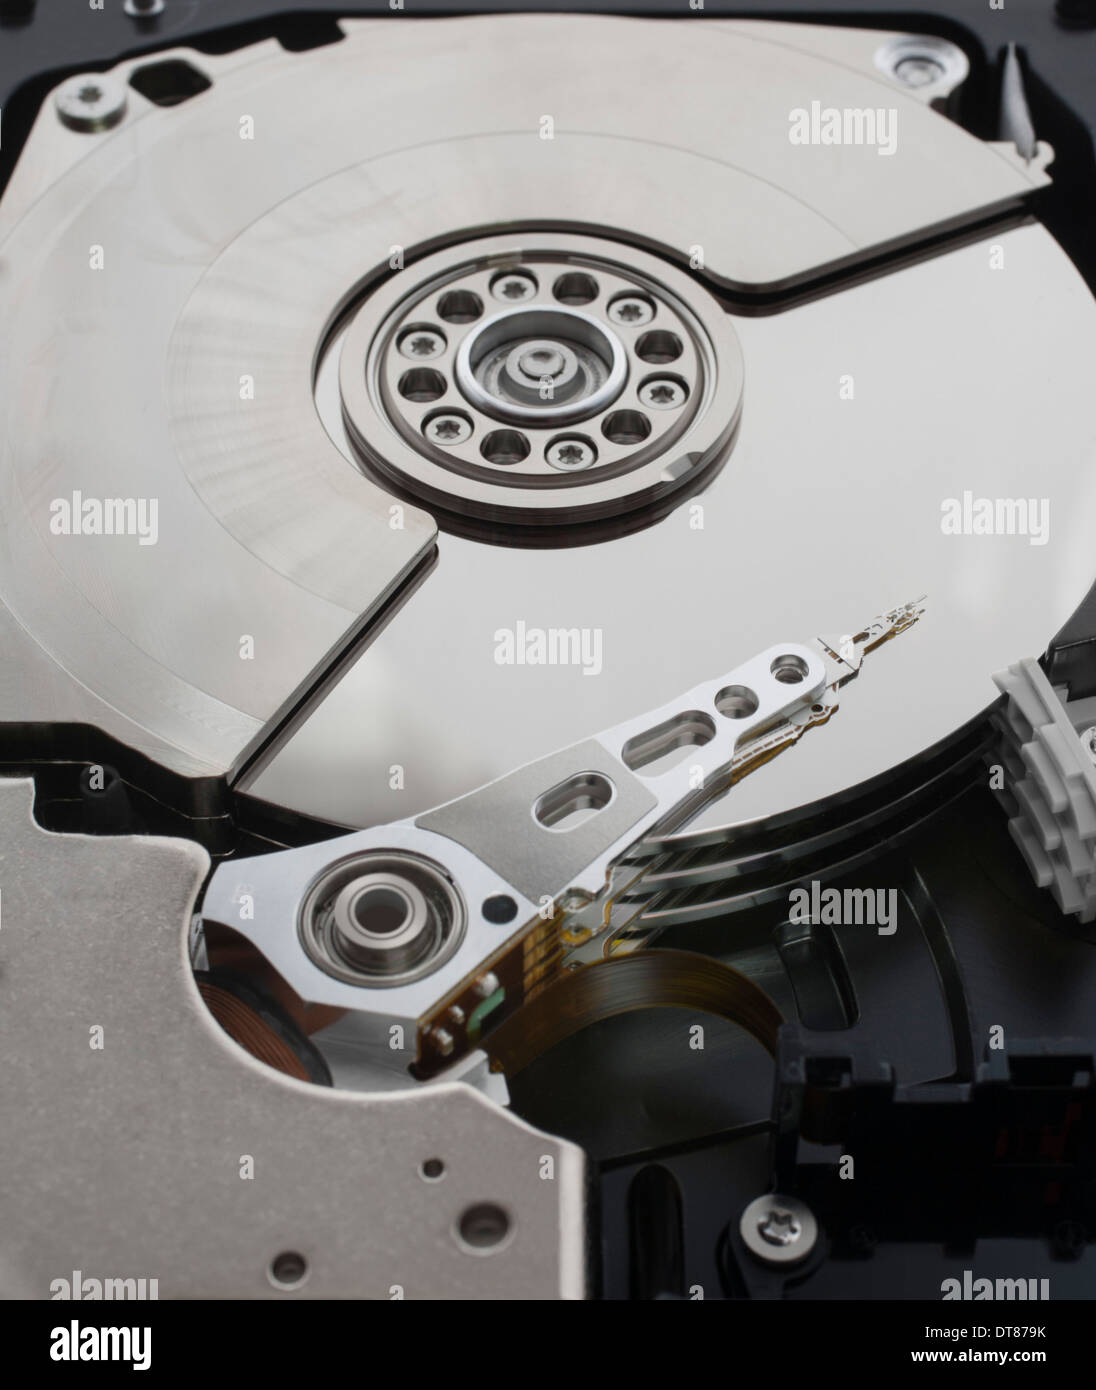 Close up of le mécanisme interne d'un disque dur de l'ordinateur. Banque D'Images